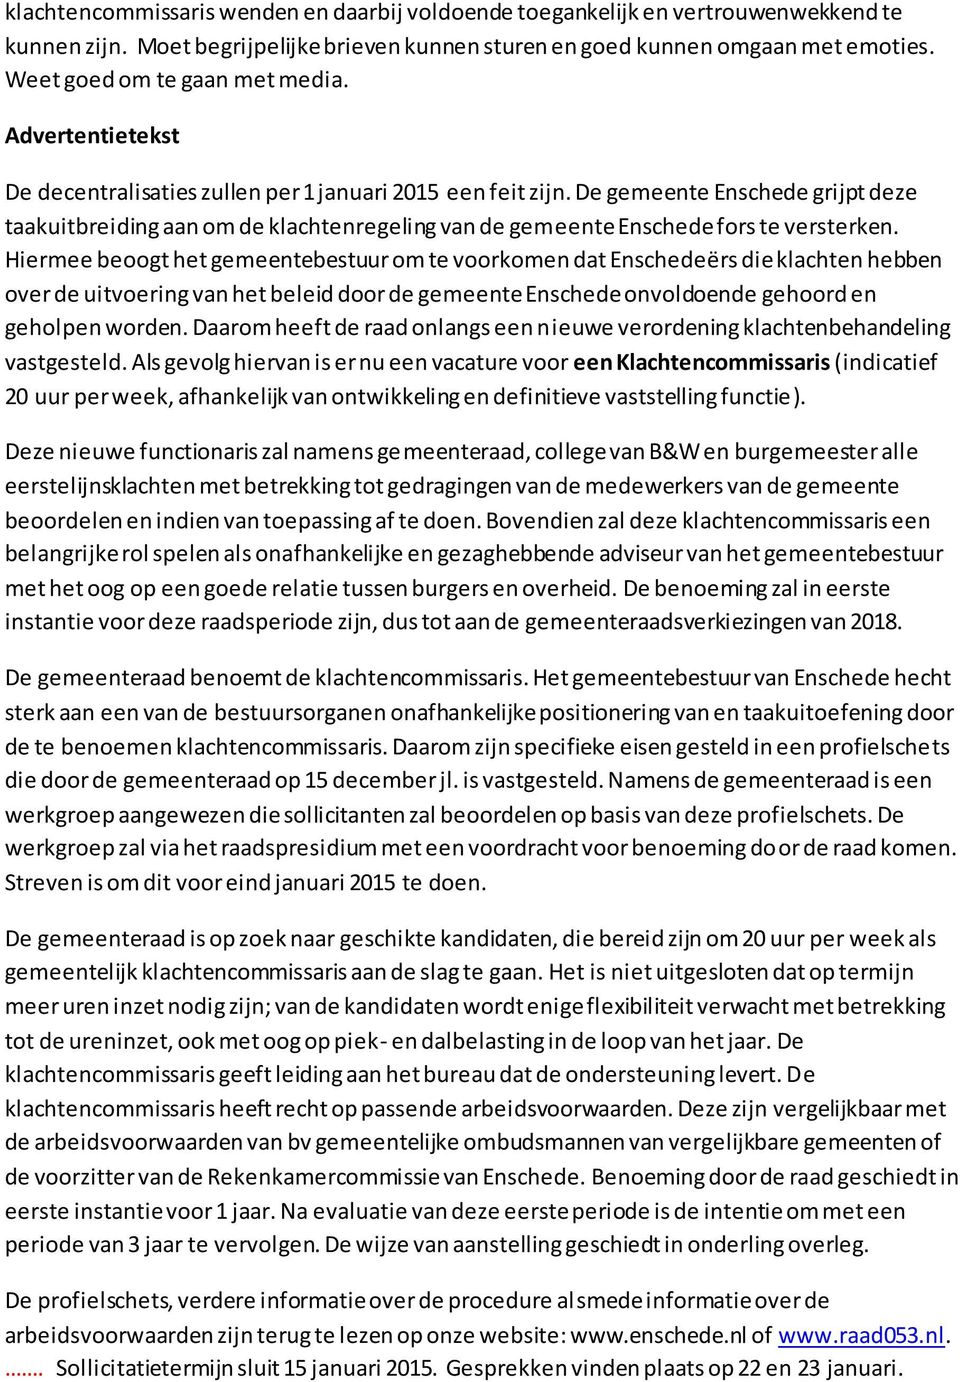 De gemeente Enschede grijpt deze taakuitbreiding aan om de klachtenregeling van de gemeente Enschede fors te versterken.